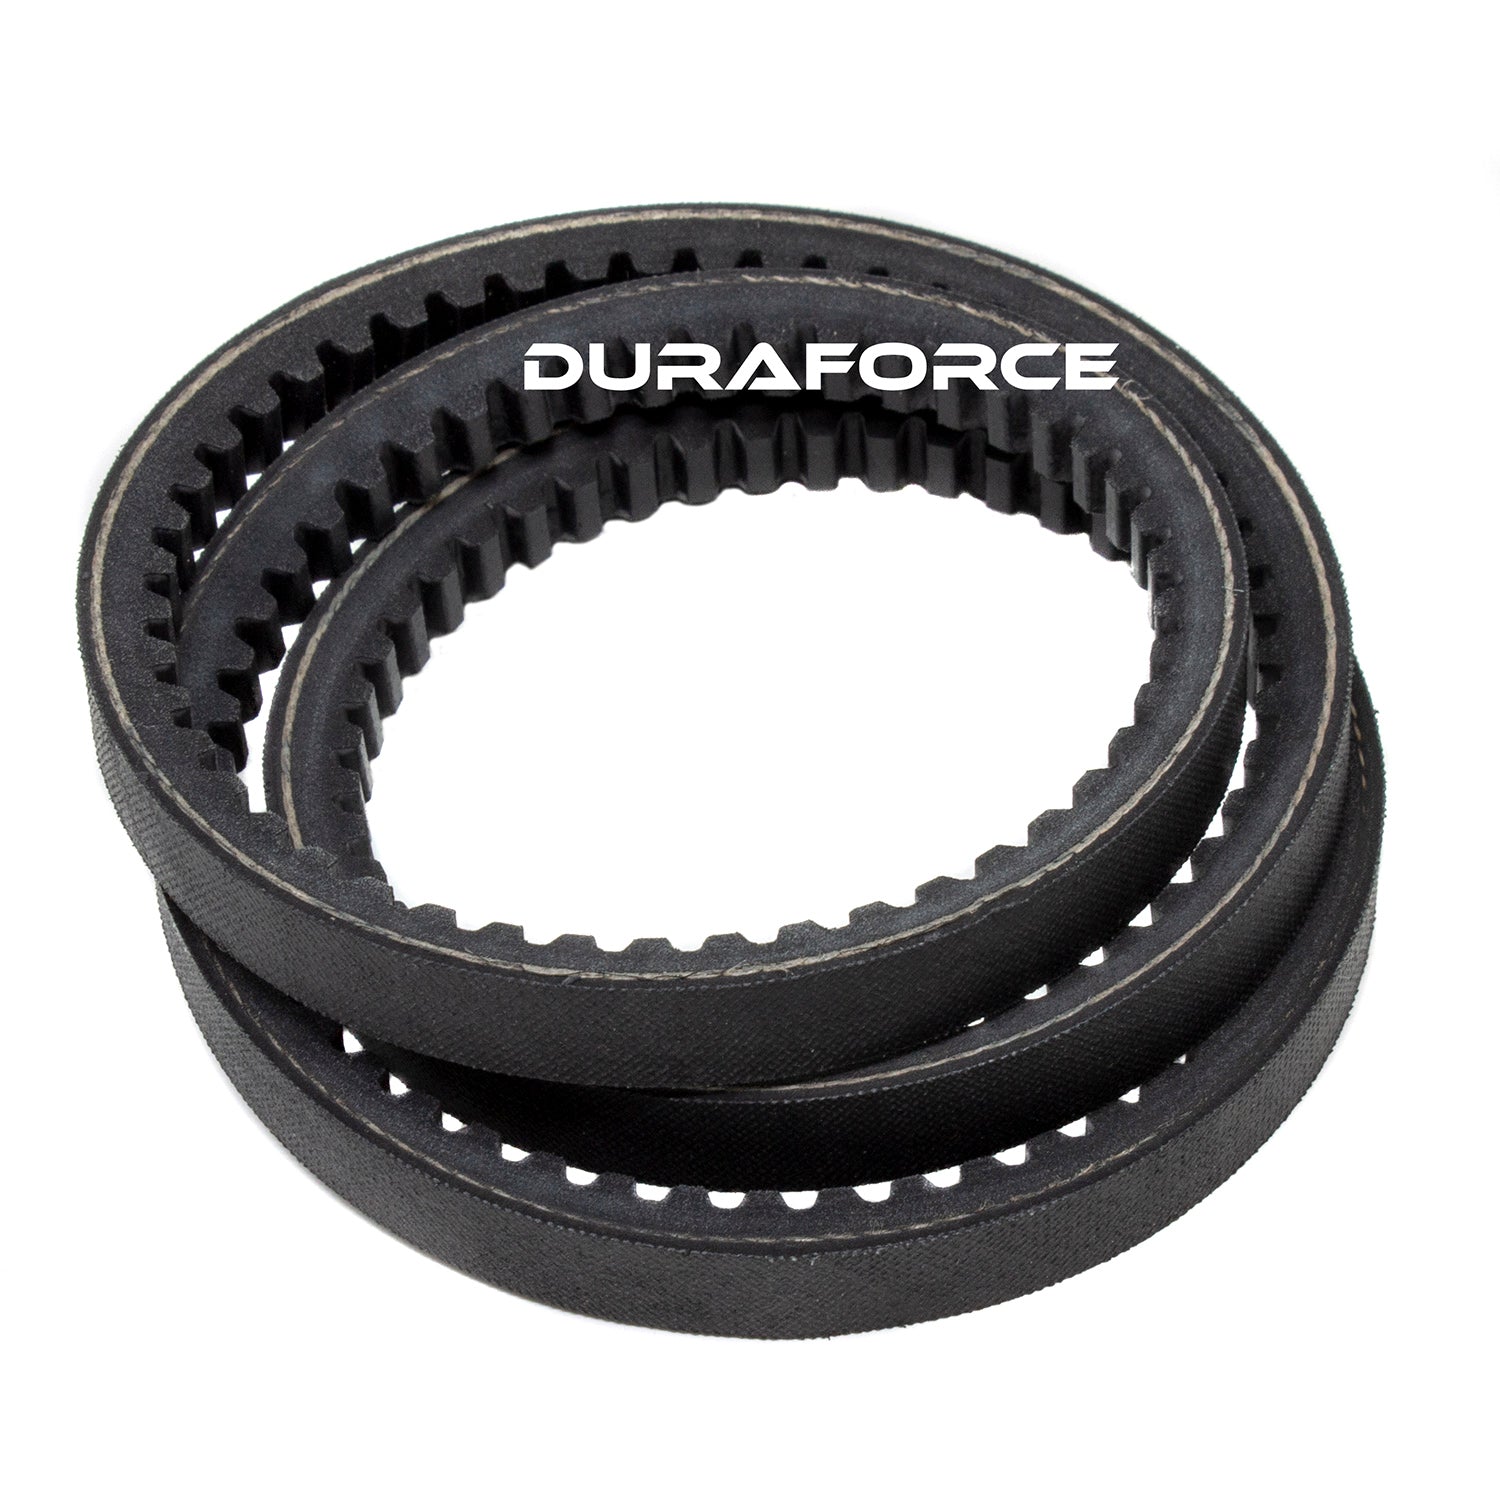 Duraforce 6675839, Alternator Belt For Bobcat